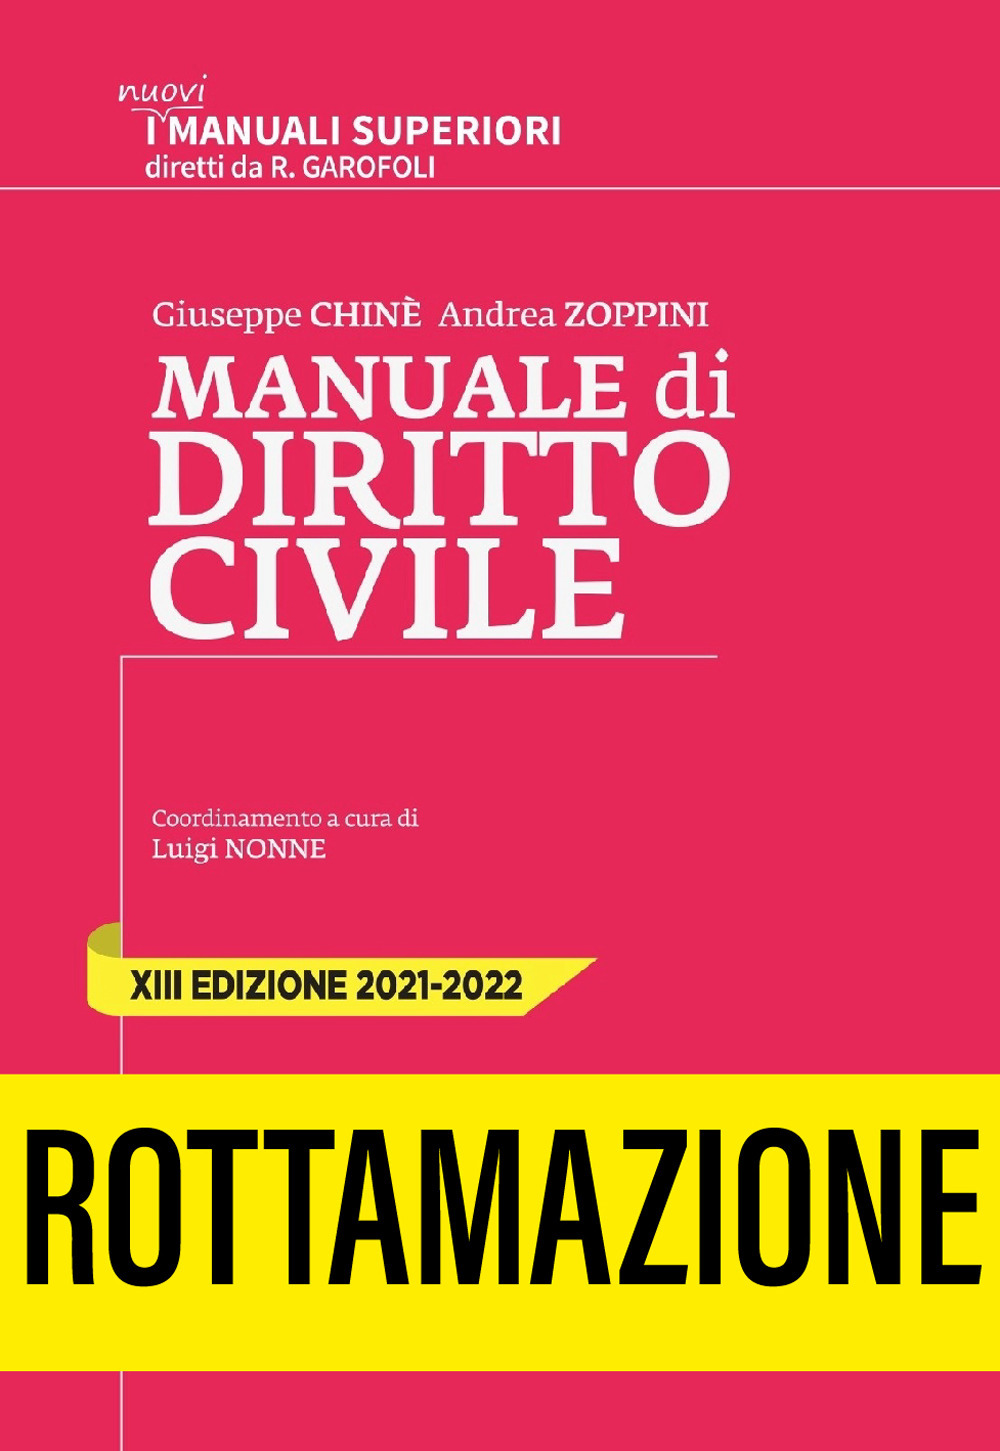 Manuale superiore di diritto civile 2021-2022